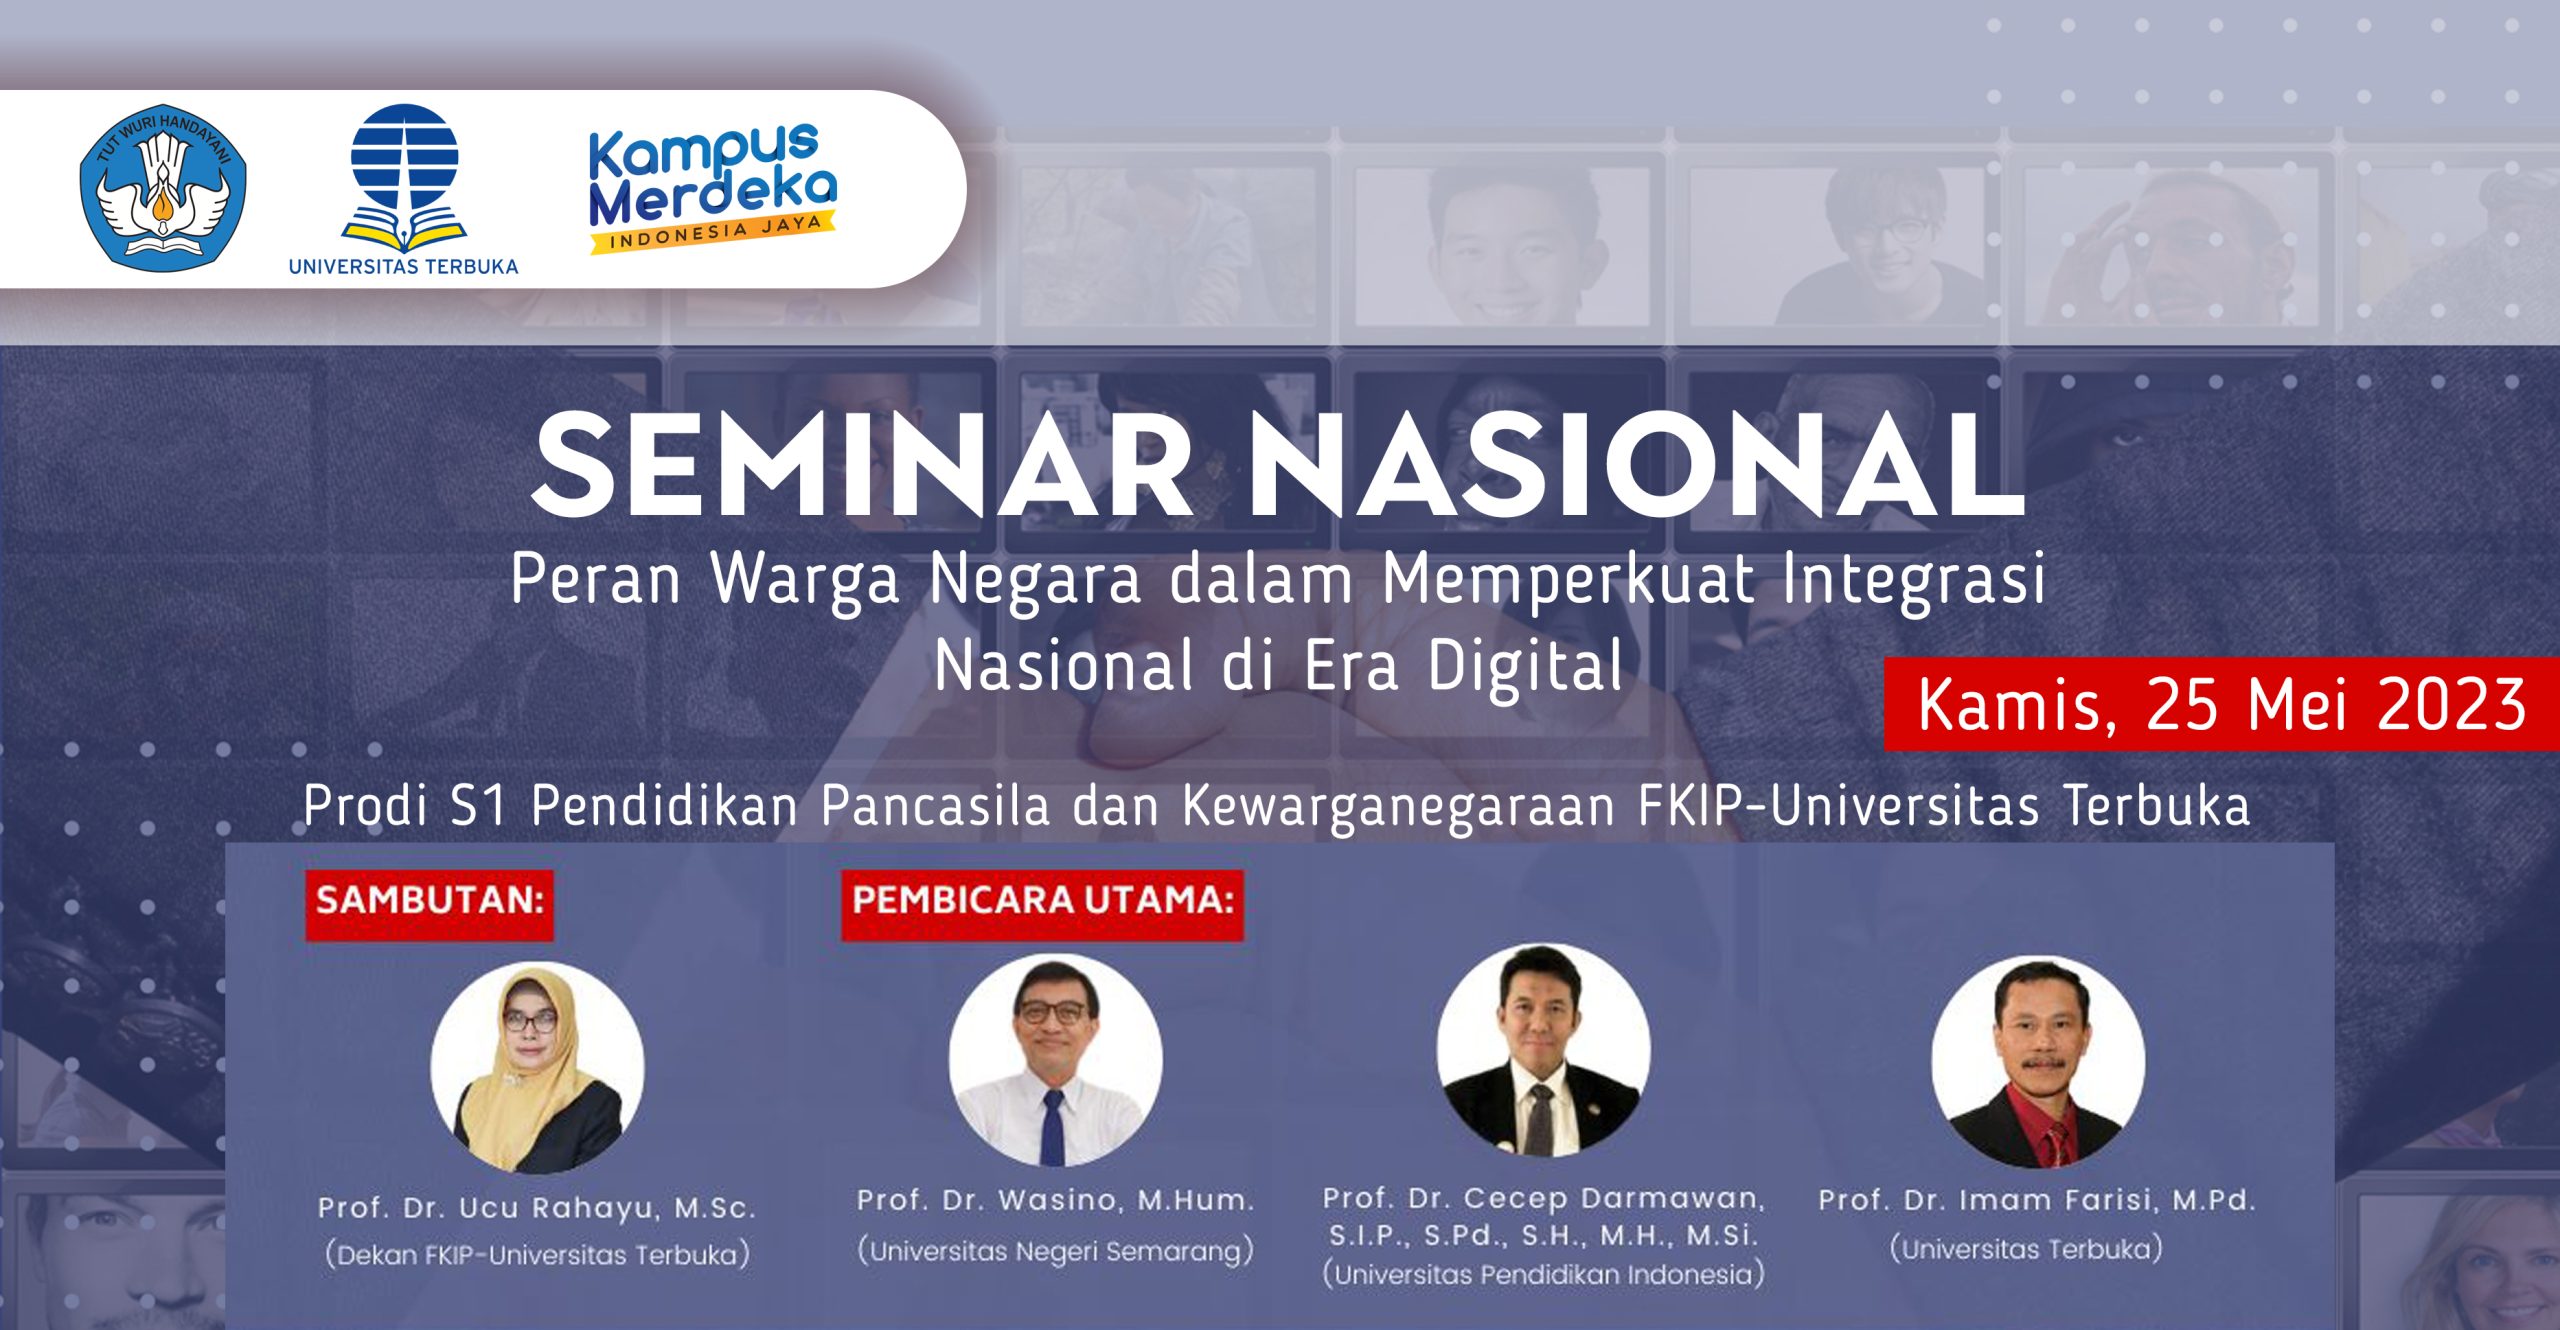 Seminar Nasional Prodi PPKn FKIP Universitas Terbuka, Upaya Memupuk Integrasi Nasional Warga Negara di Era Digital